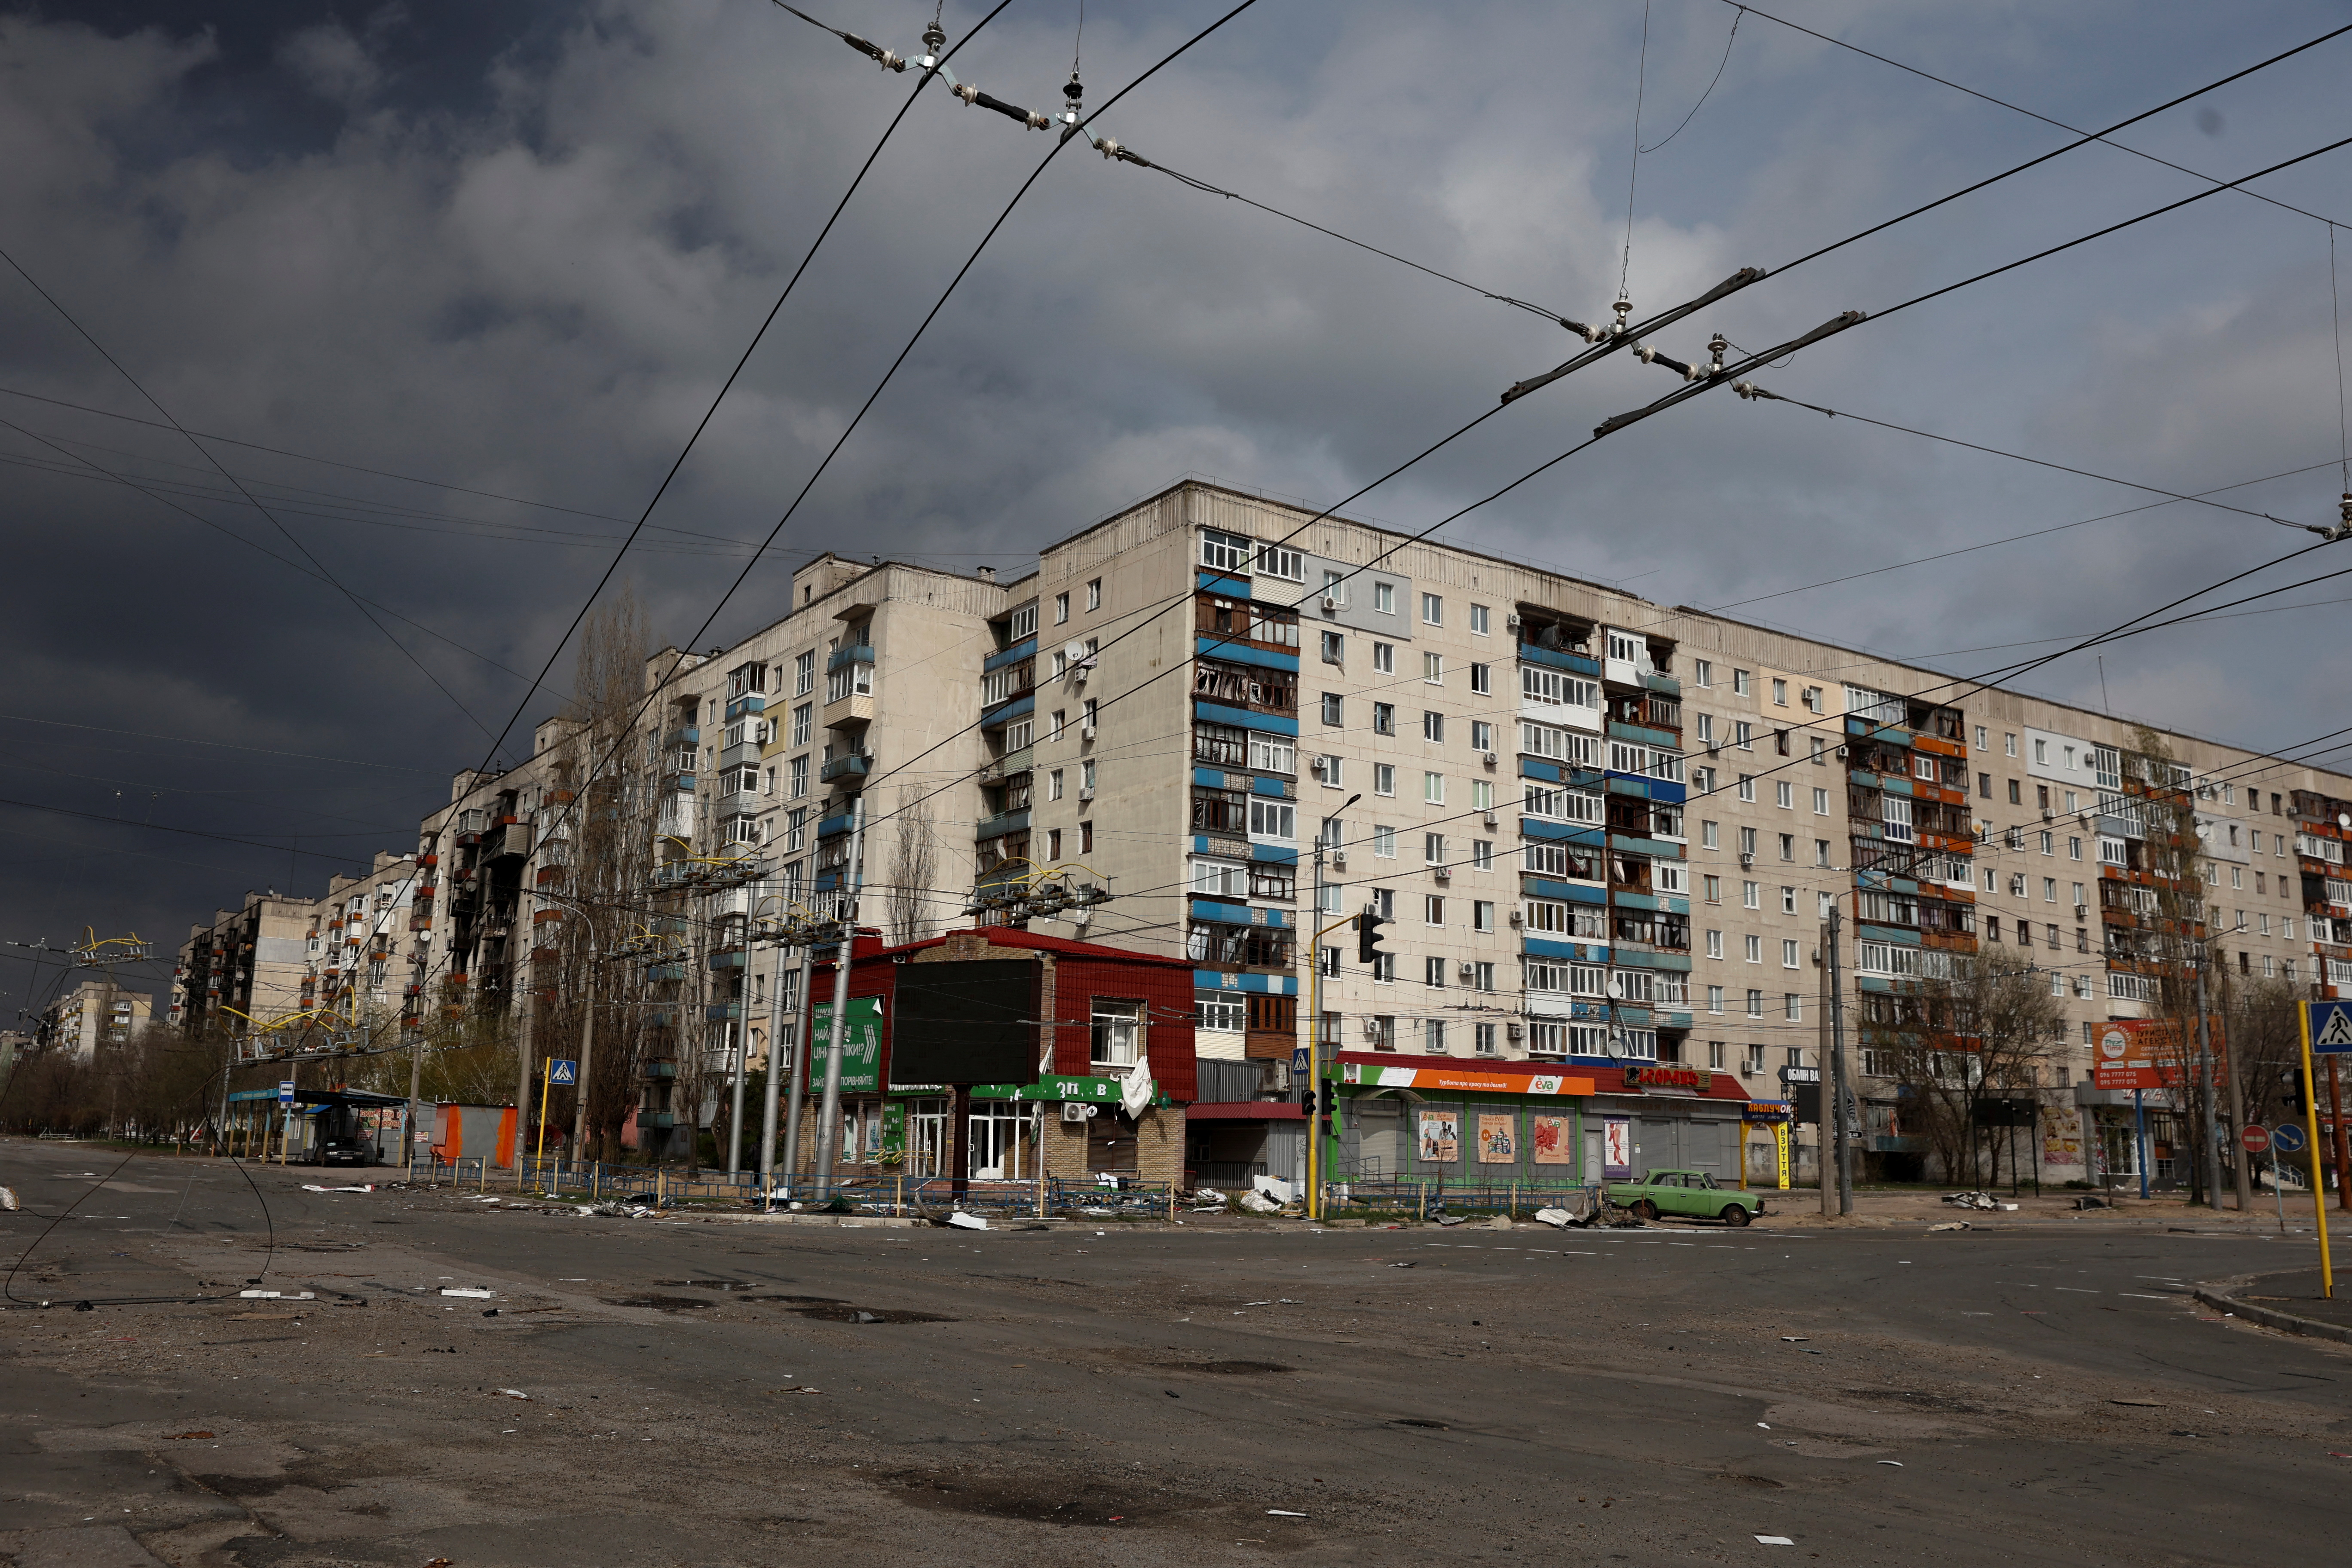 Una vista muestra edificios residenciales dañados por un ataque militar, mientras continúa el ataque de Rusia contra Ucrania, en Sievierodonetsk, región de Lugansk. REUTERS/Serhii Nuzhnenko